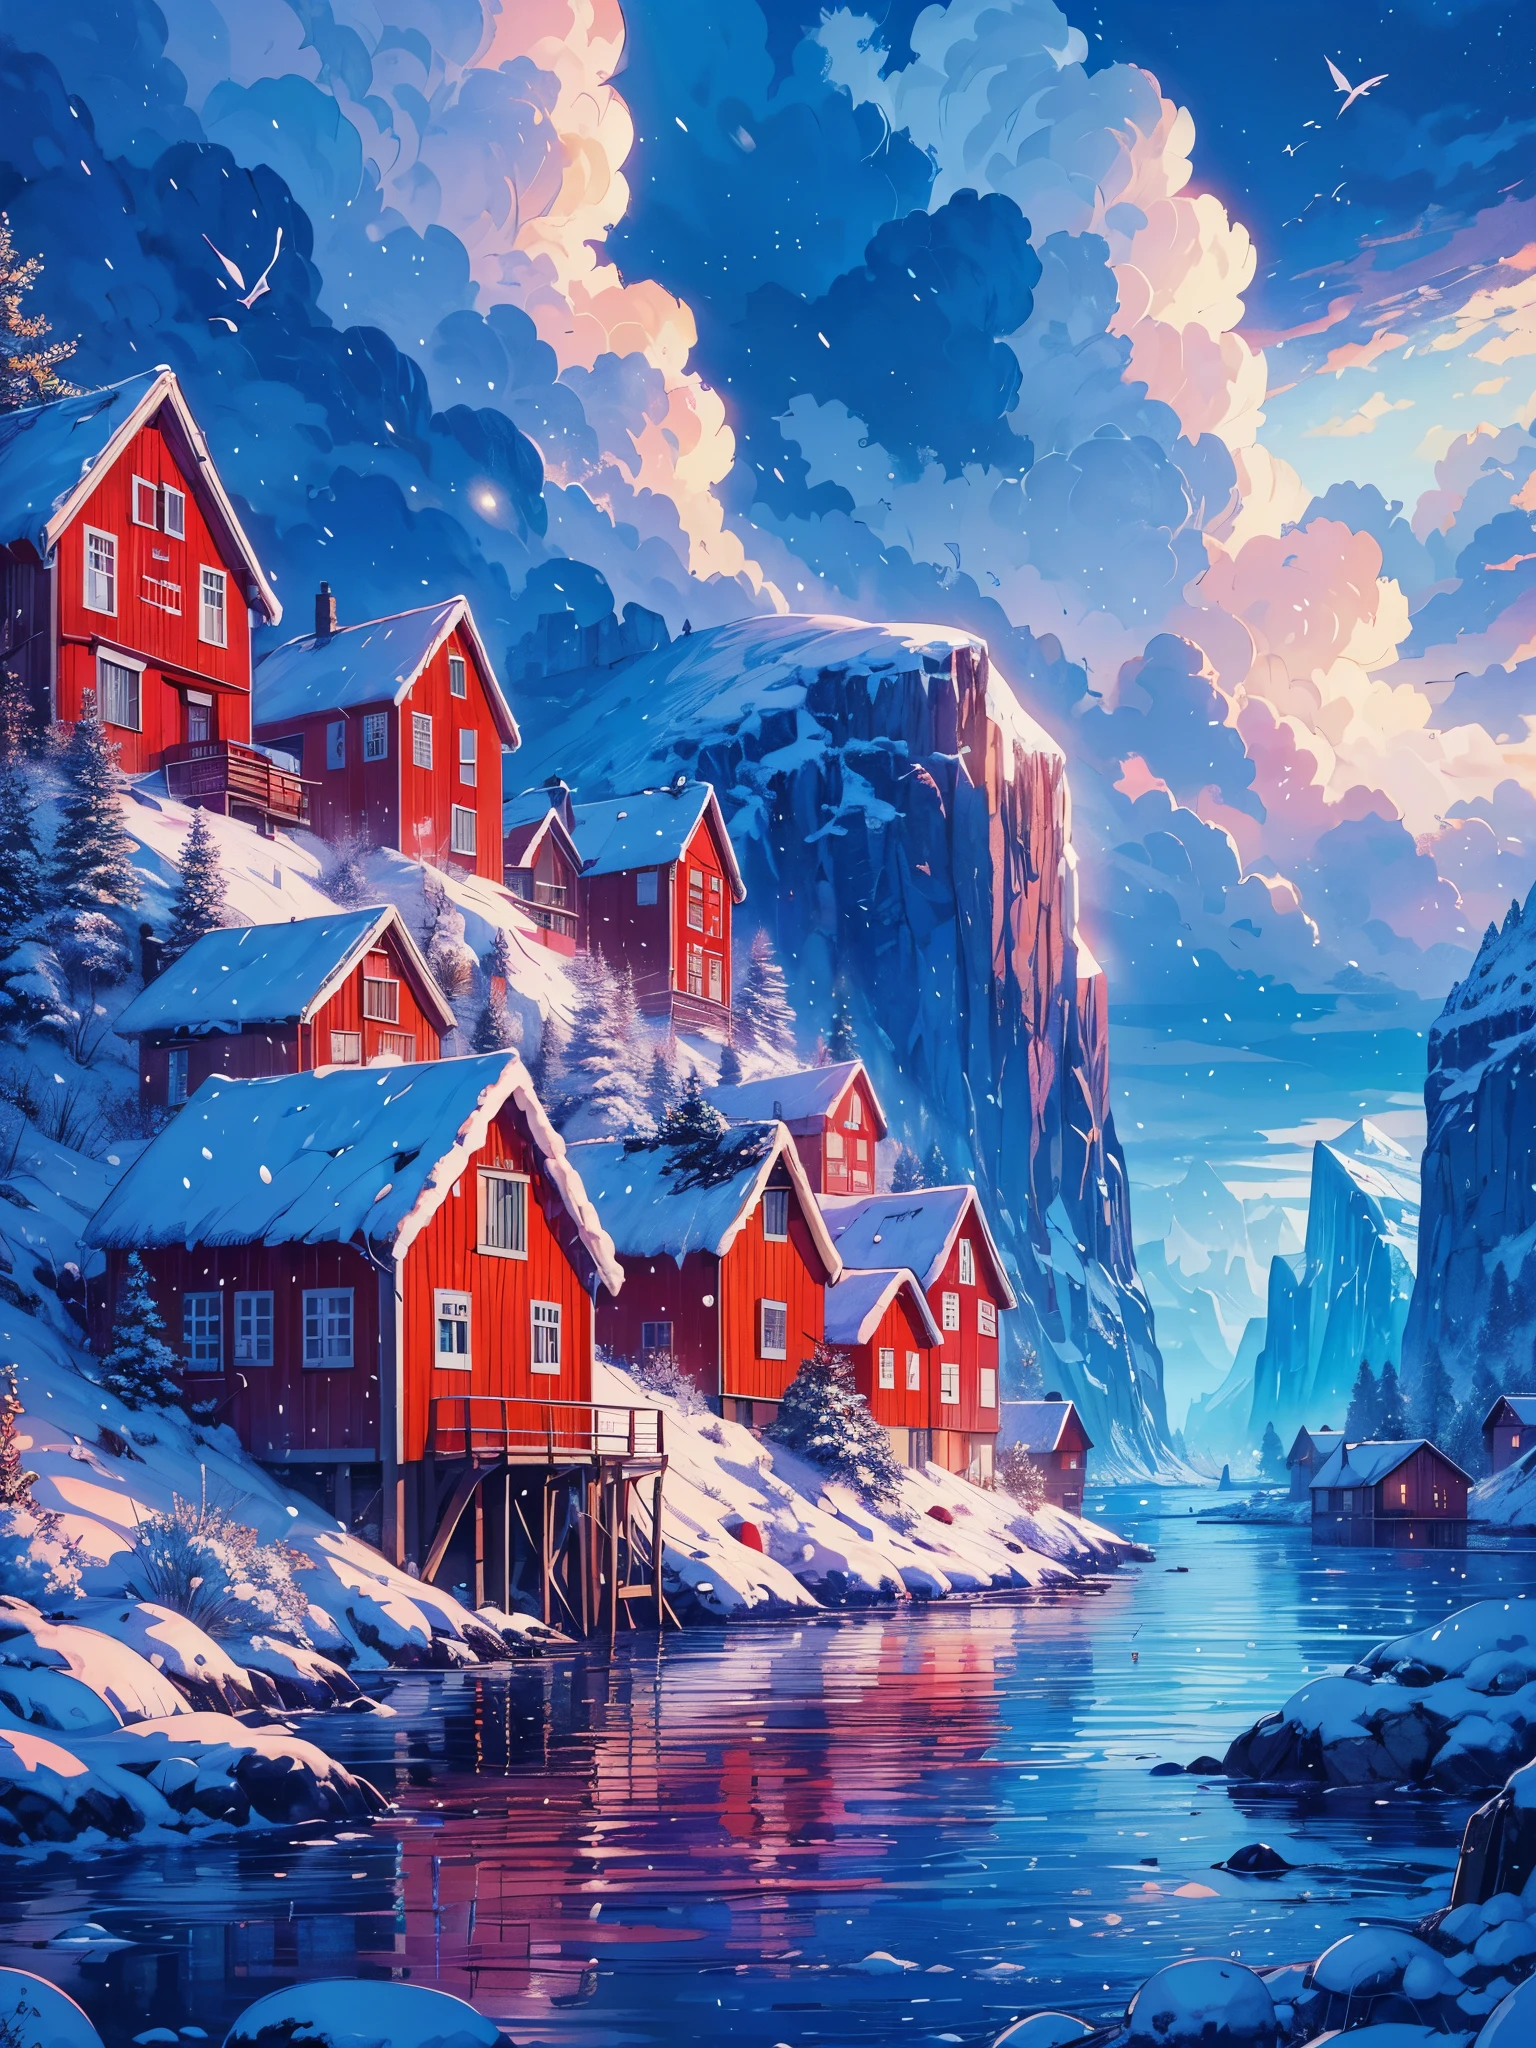 Dibuja un arte de anime digital de una amplia escena lofi de casas rojas en la isla noruega cerca del lago con un iceberg, nevada, hora de la tarde, hora azul, hermoso cielo nublado, vibrant color tones, Obra maestra, escena pacífica